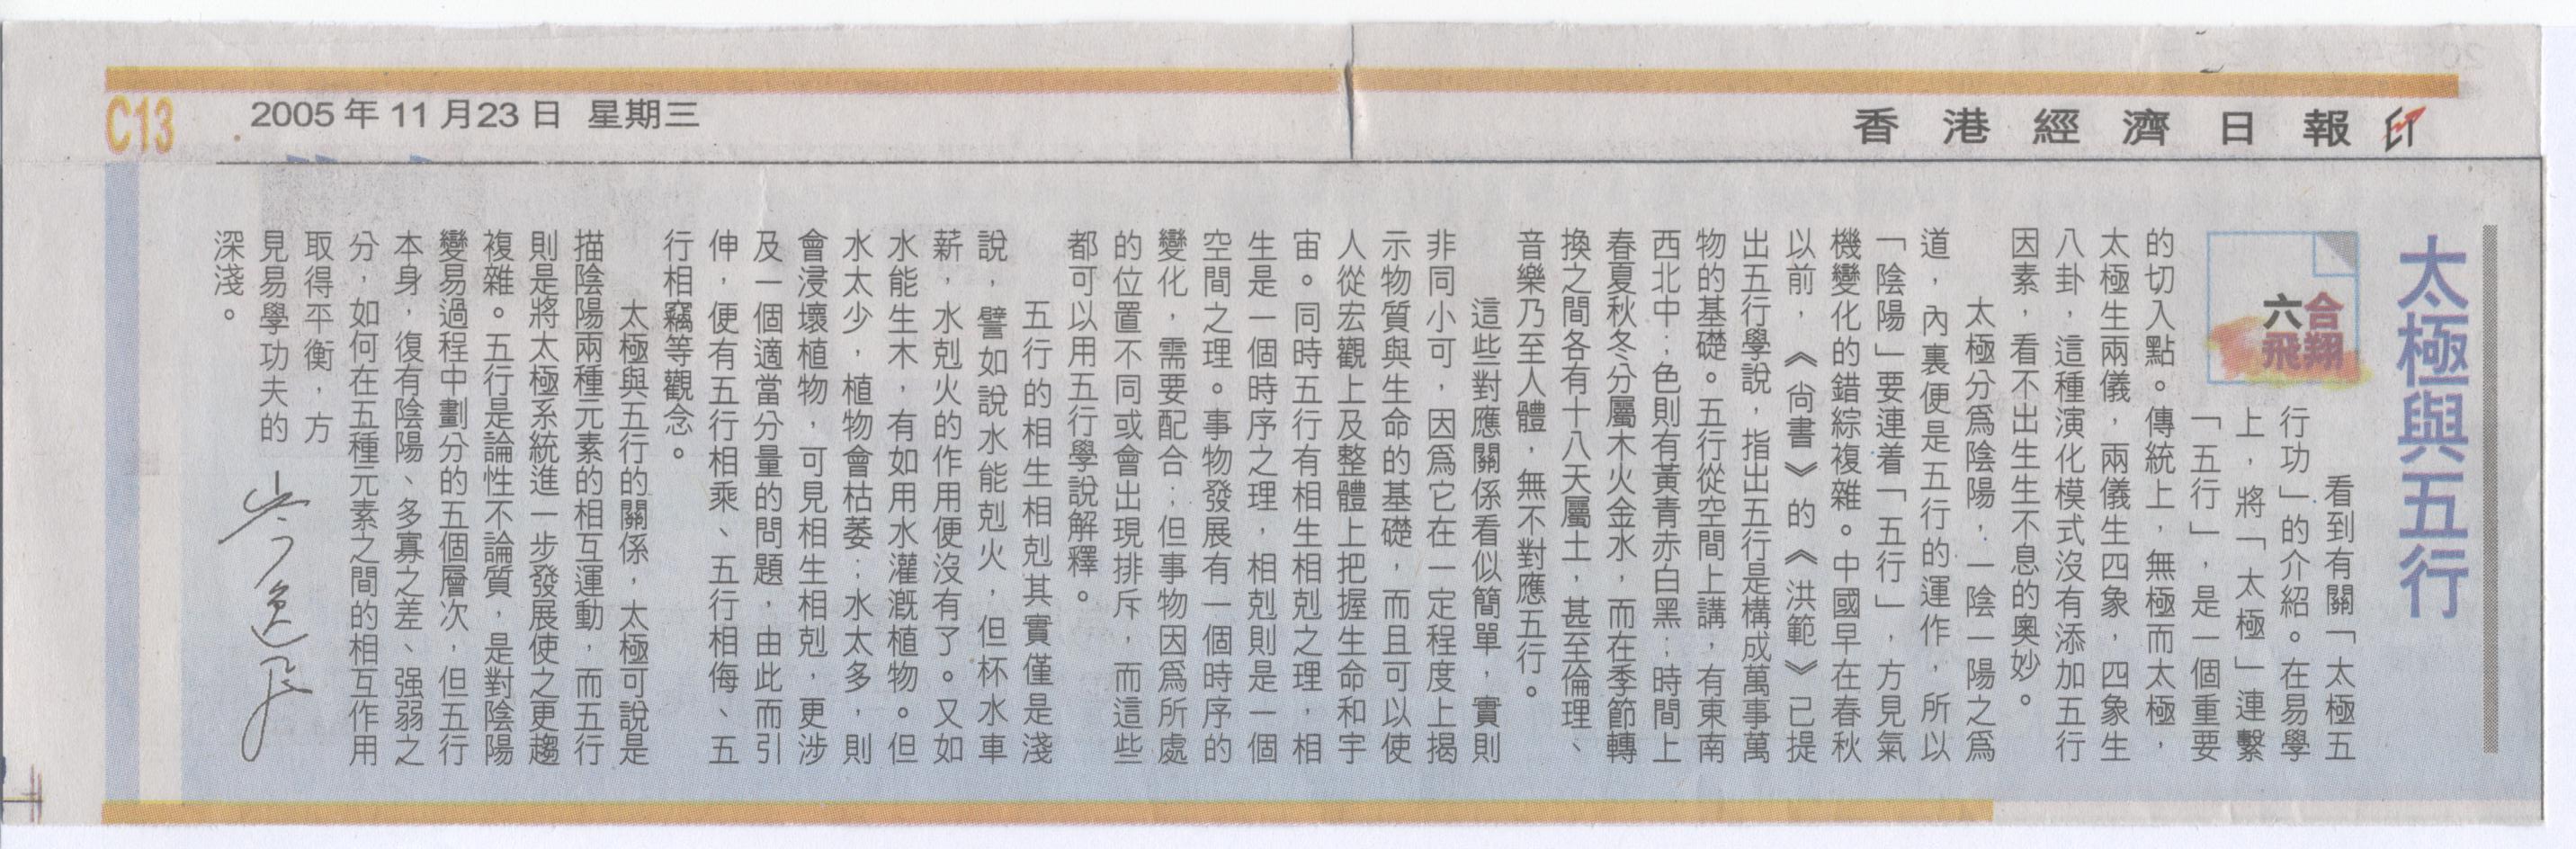 香港經濟日報︰2005年11月23日 (太極與五行)